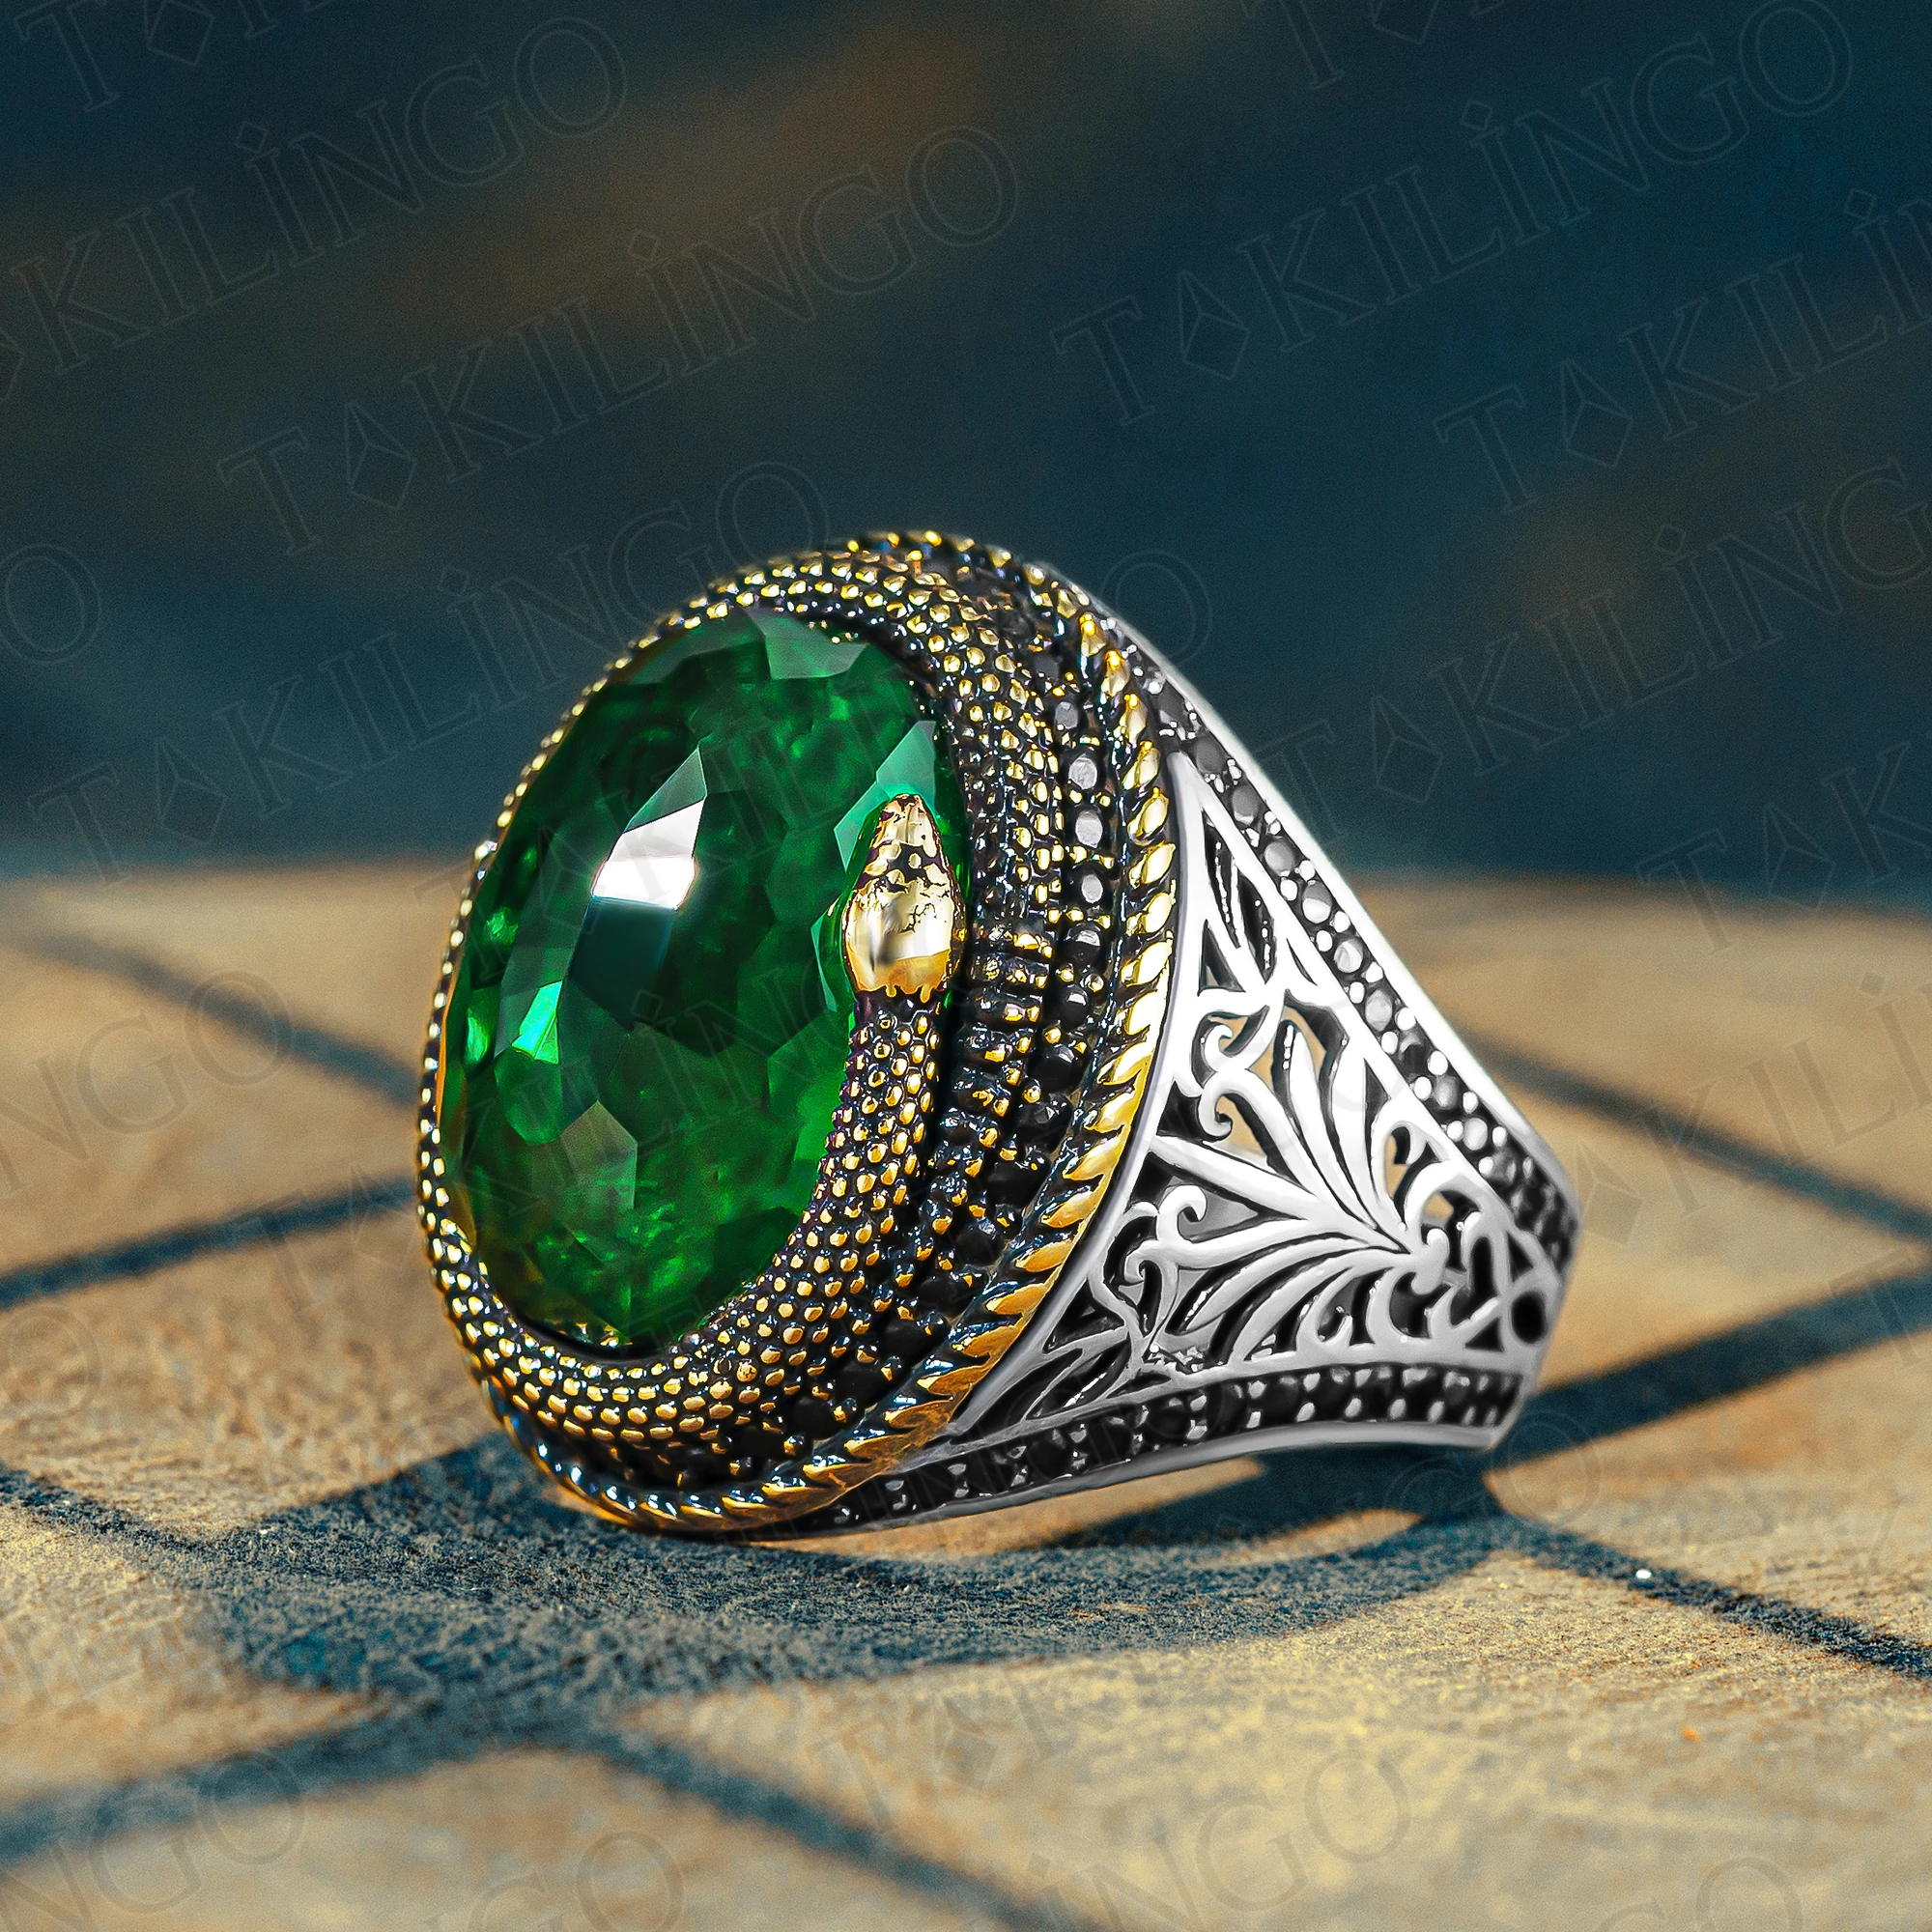 anello-modello-serpente-in-argento-anello-in-argento-con-zirconi-verdi-anello-serpente-in-argento-anello-serpente-design-gotico-da-uomo-zirconi-cubici-elegante